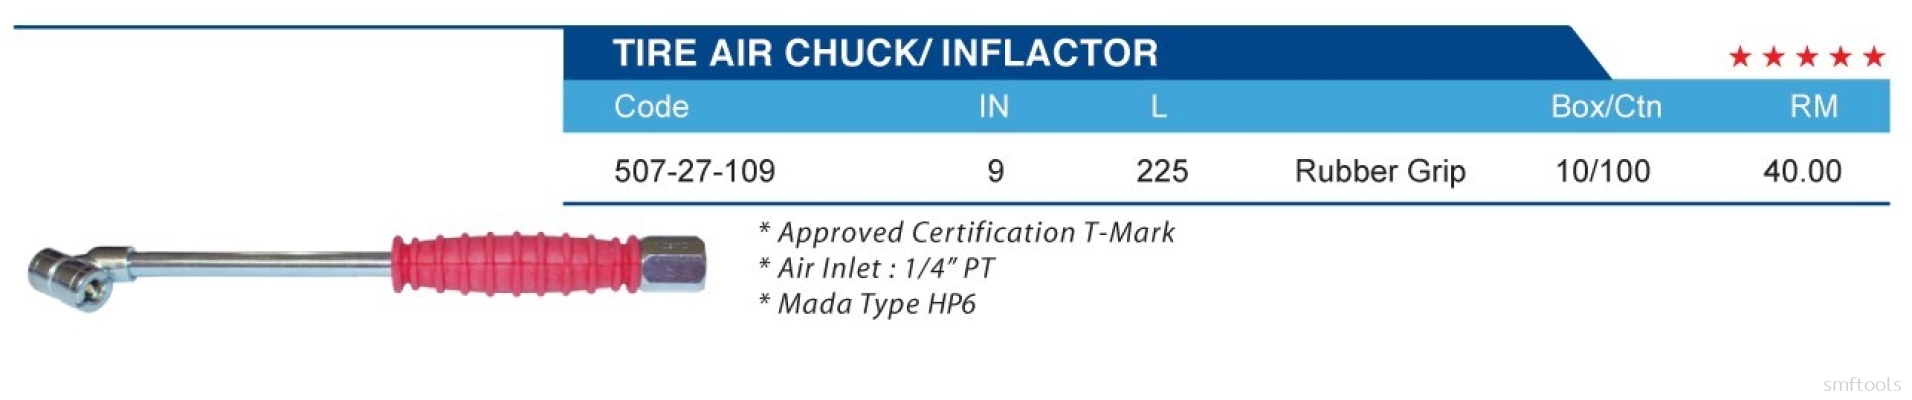 TIRE AIR CHUCK/ INFLACTOR